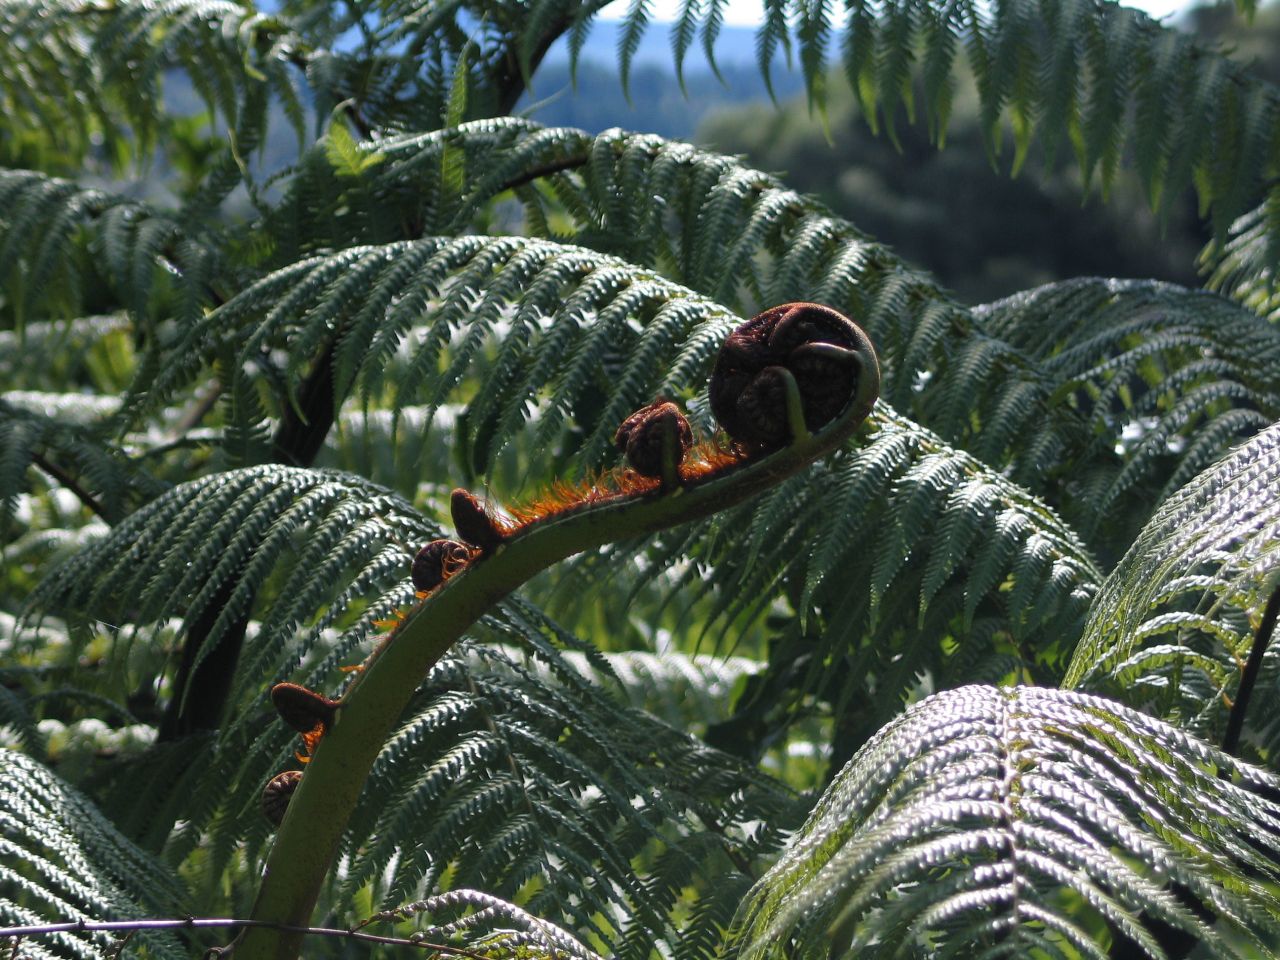 fotka / image Waimangu, New Zealand